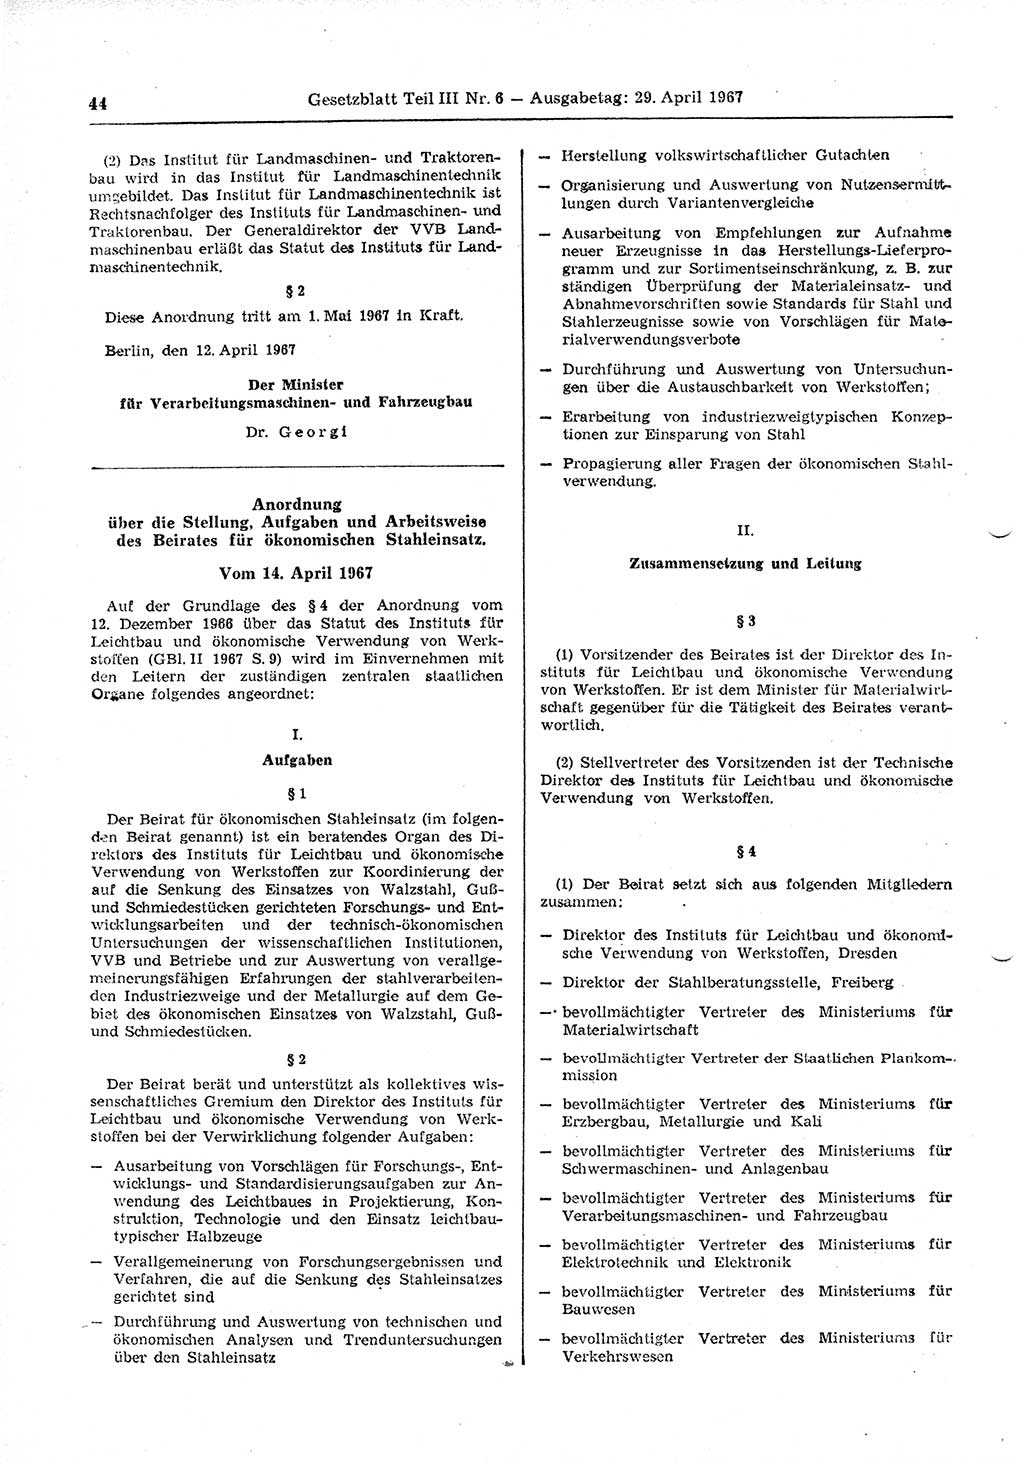 Gesetzblatt (GBl.) der Deutschen Demokratischen Republik (DDR) Teil ⅠⅠⅠ 1967, Seite 44 (GBl. DDR ⅠⅠⅠ 1967, S. 44)